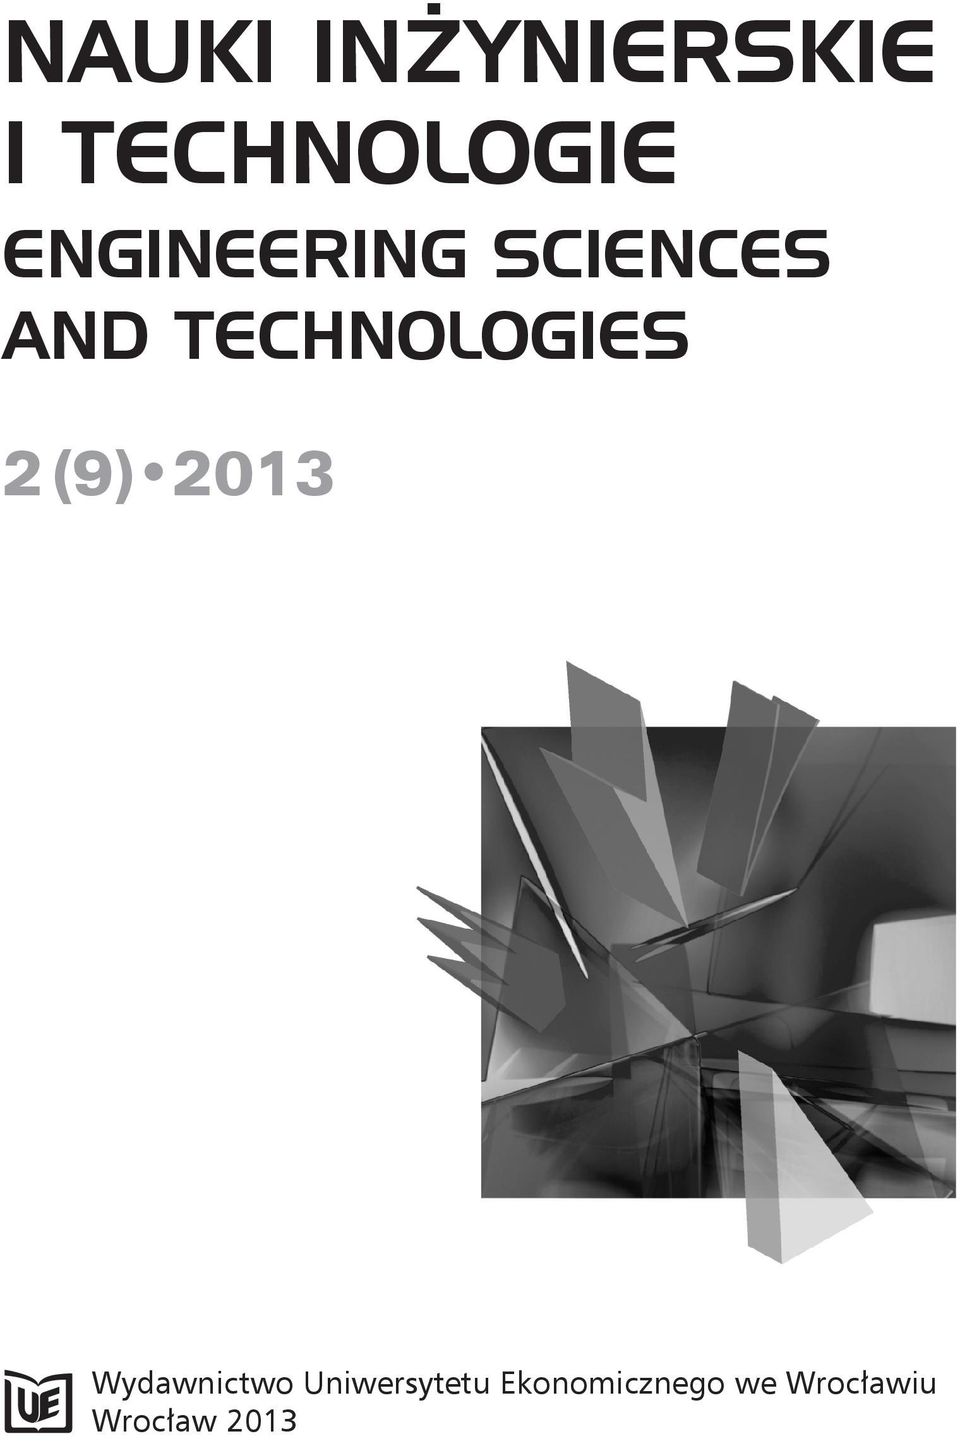 TECHNOLOGIES 2 (9) 2013 Wydawnictwo